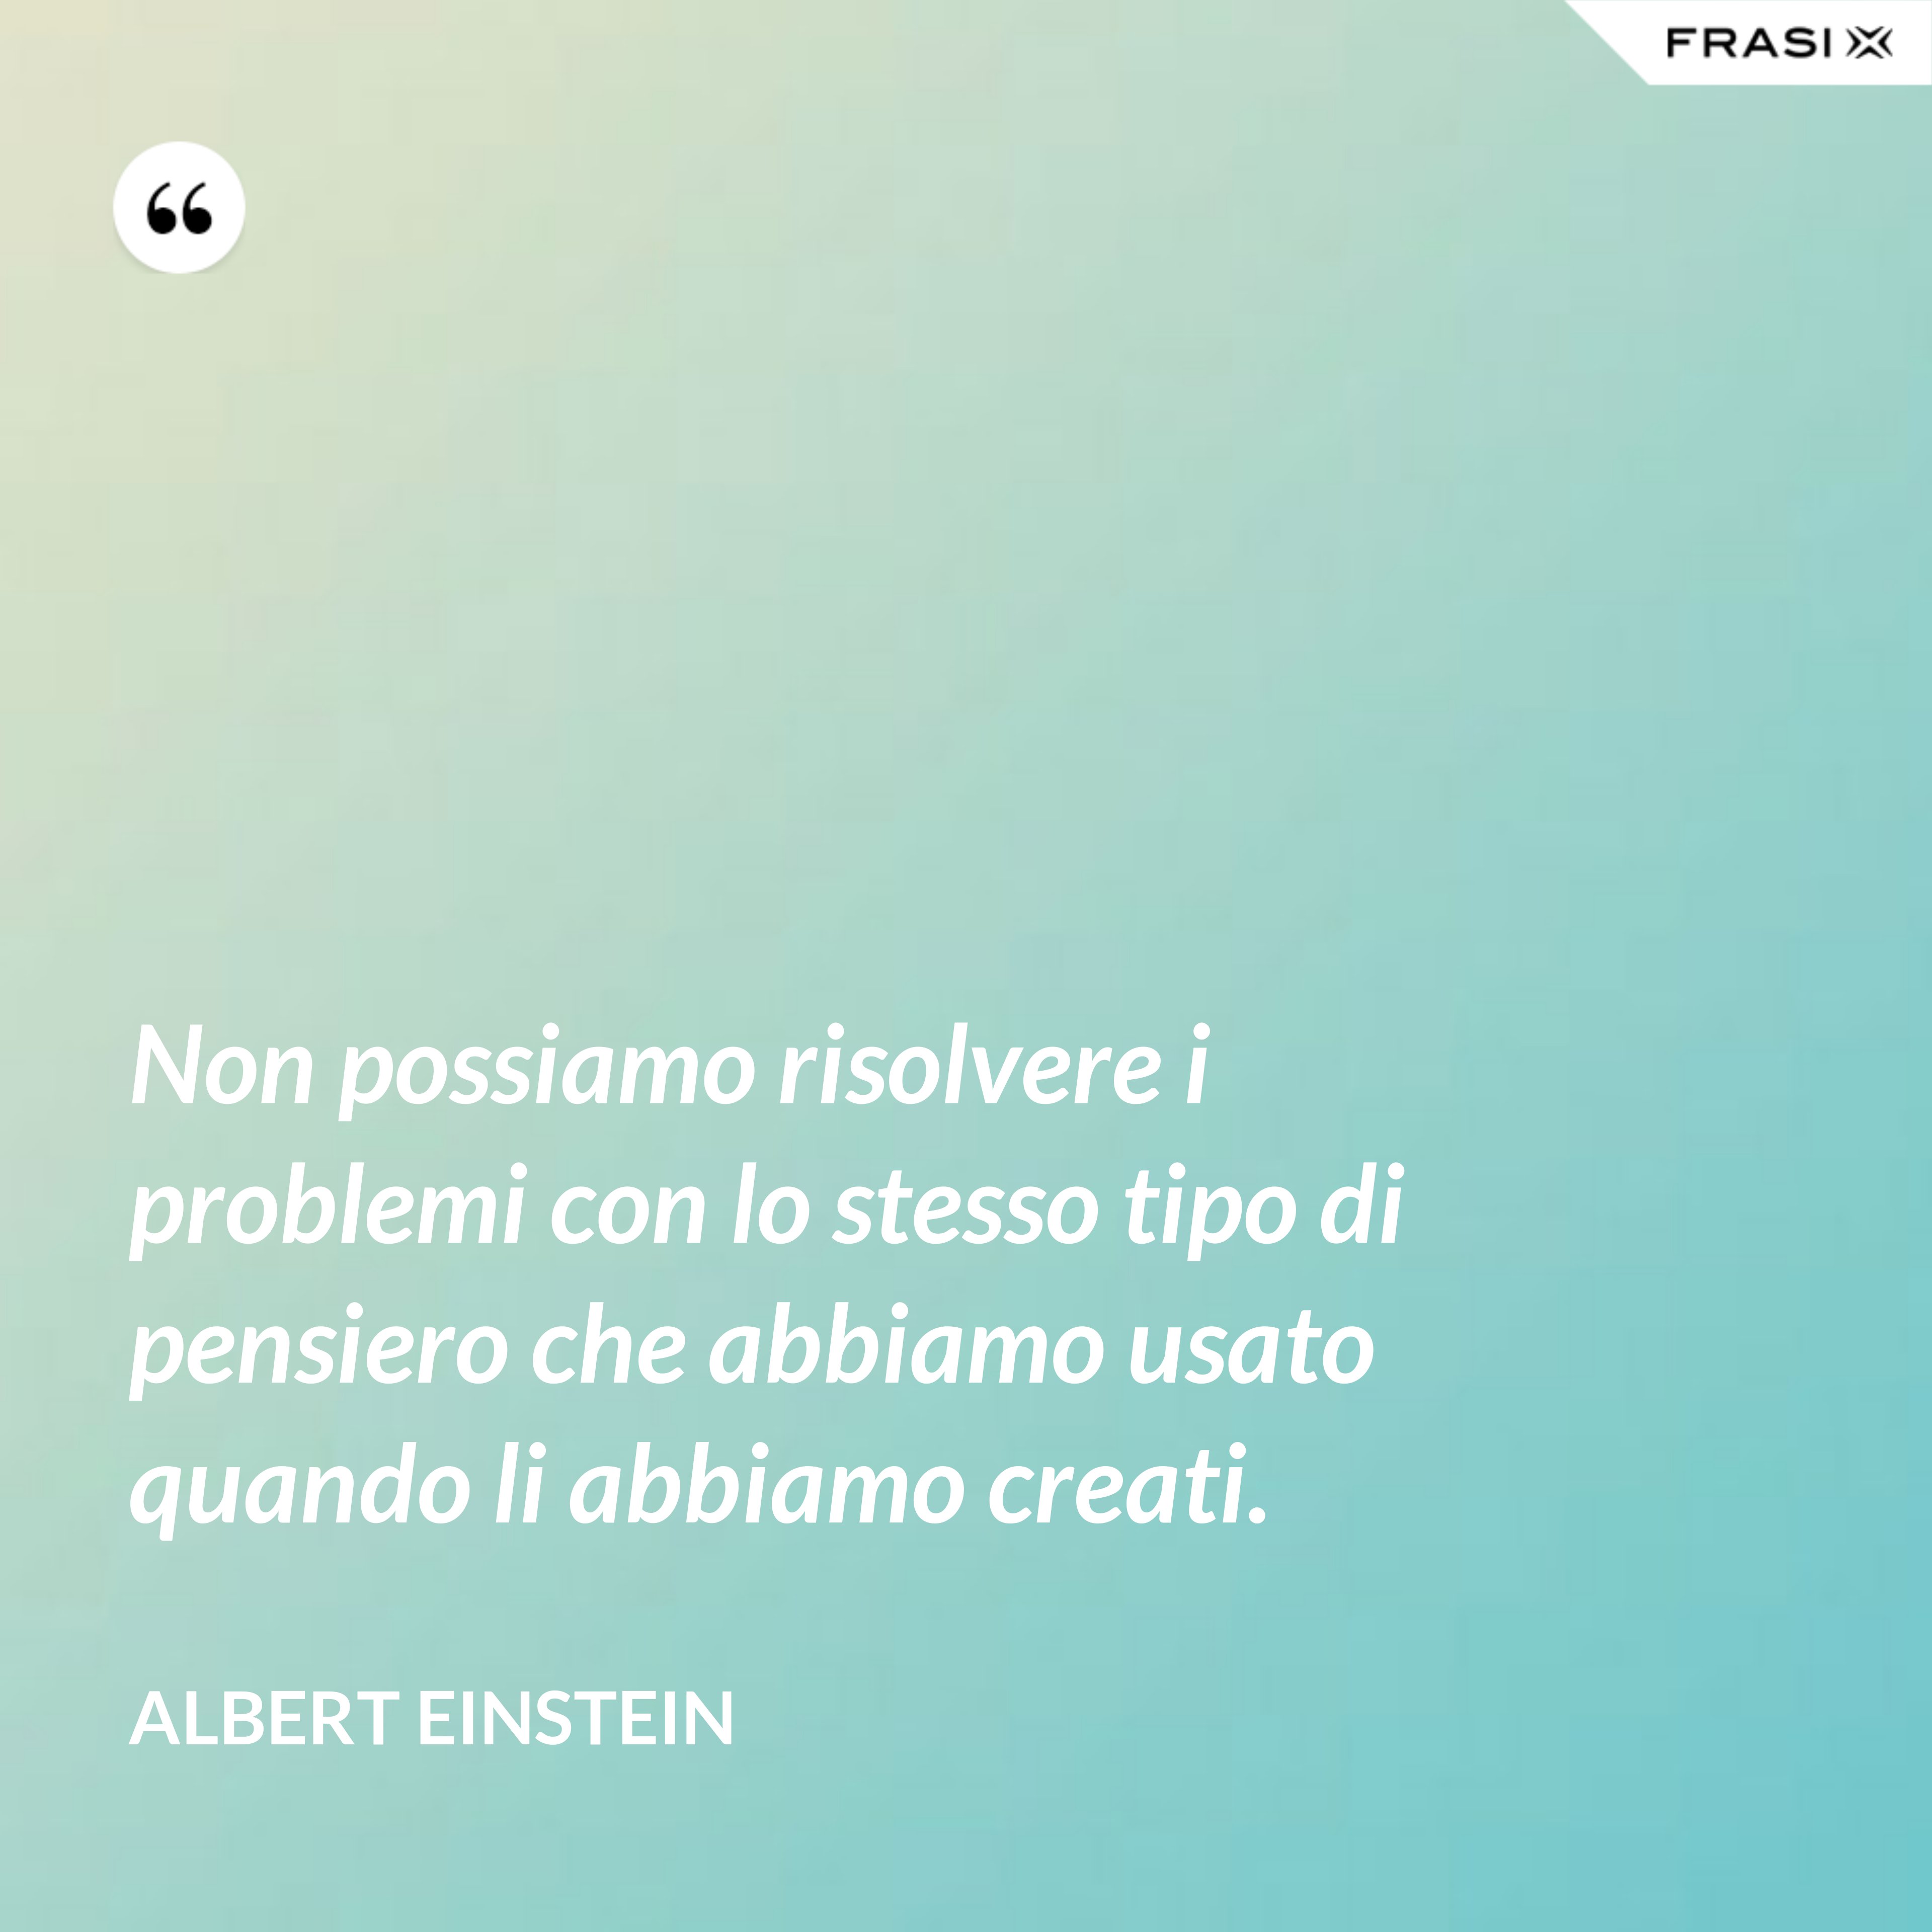 Non possiamo risolvere i problemi con lo stesso tipo di pensiero che abbiamo usato quando li abbiamo creati. - Albert Einstein